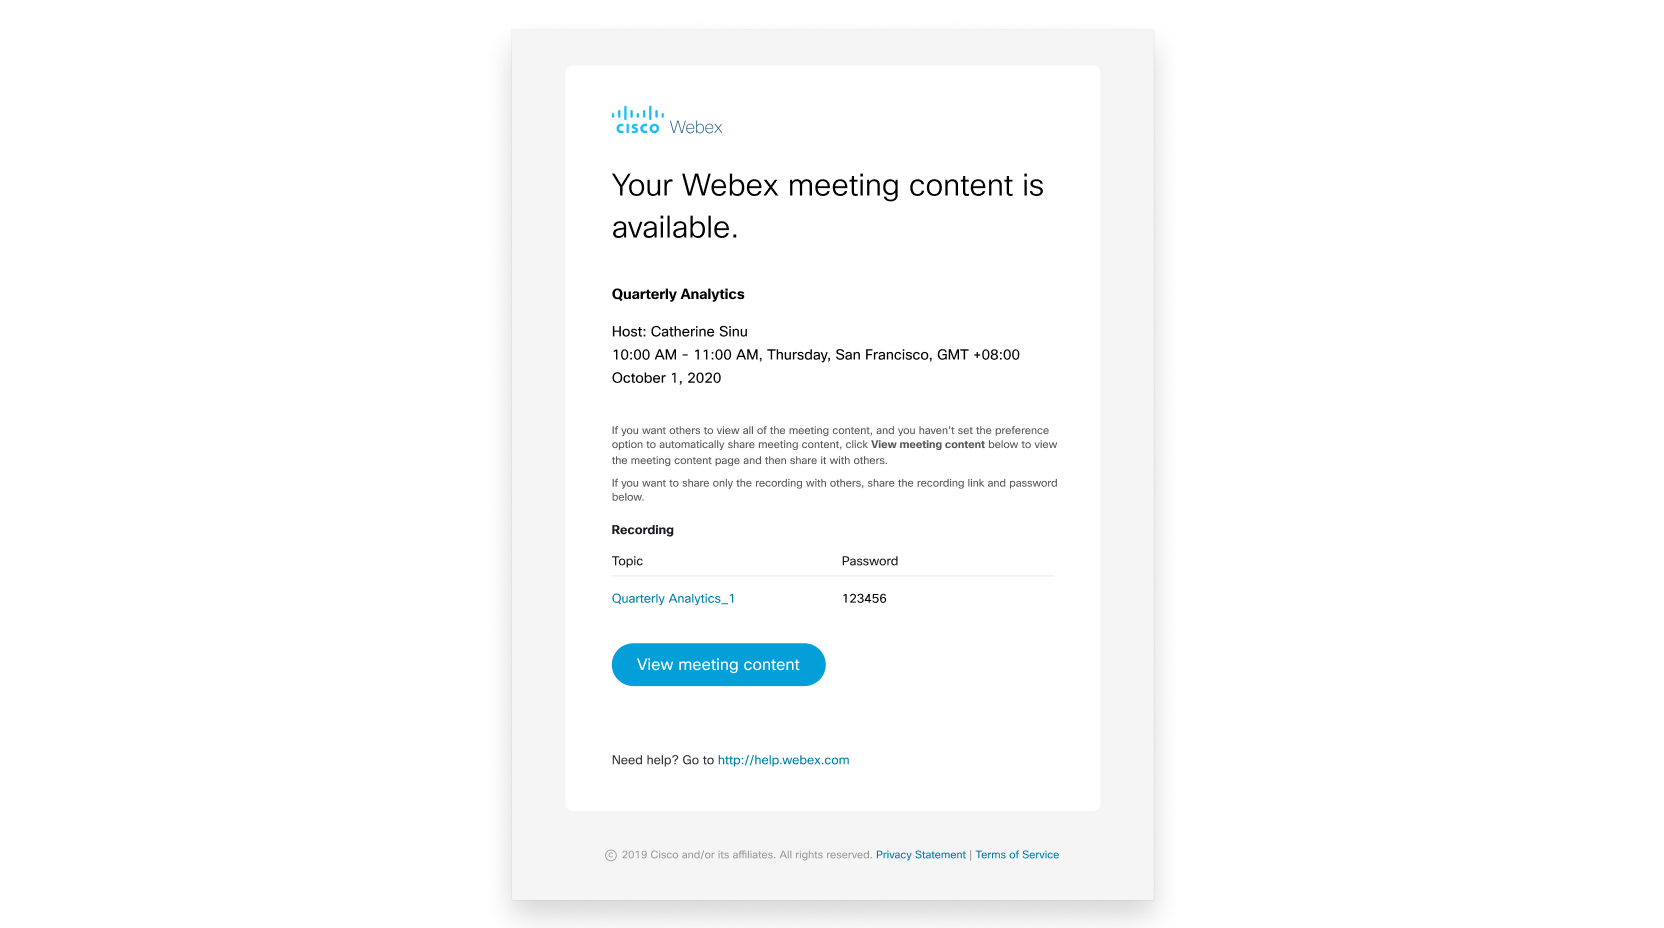 Conținutul întâlnirii este disponibil prin e-mail